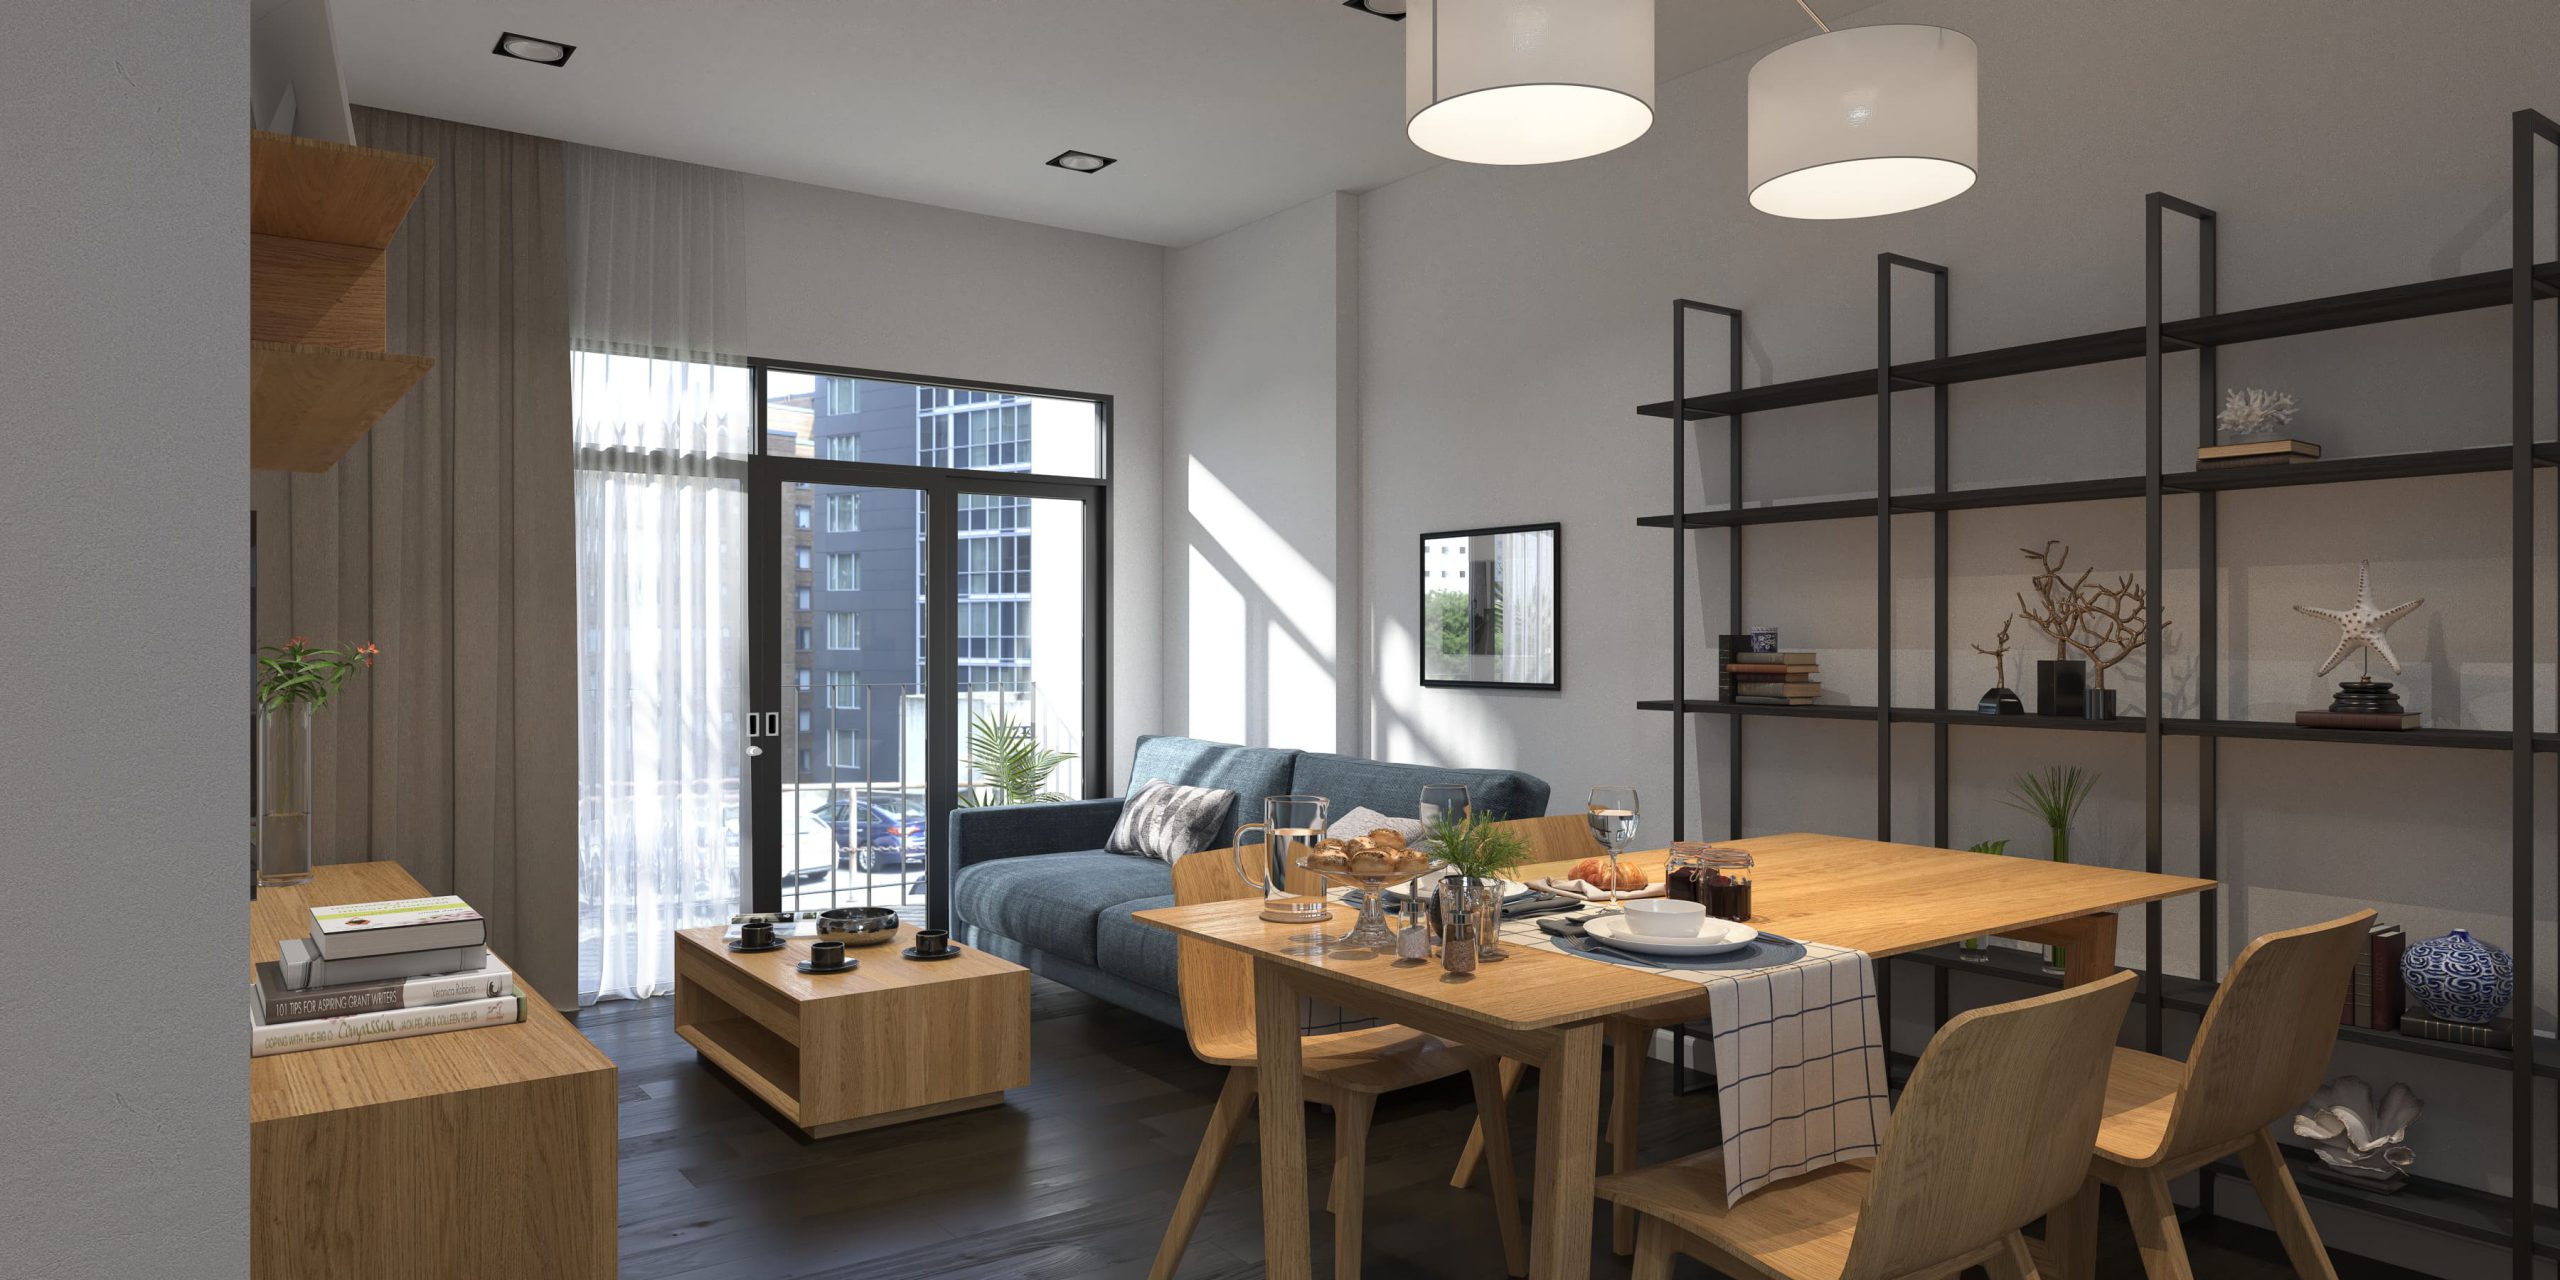 Thiết kế nội thất phòng ăn chung cư: 5 phương án và 3 mẫu đẹp nhất